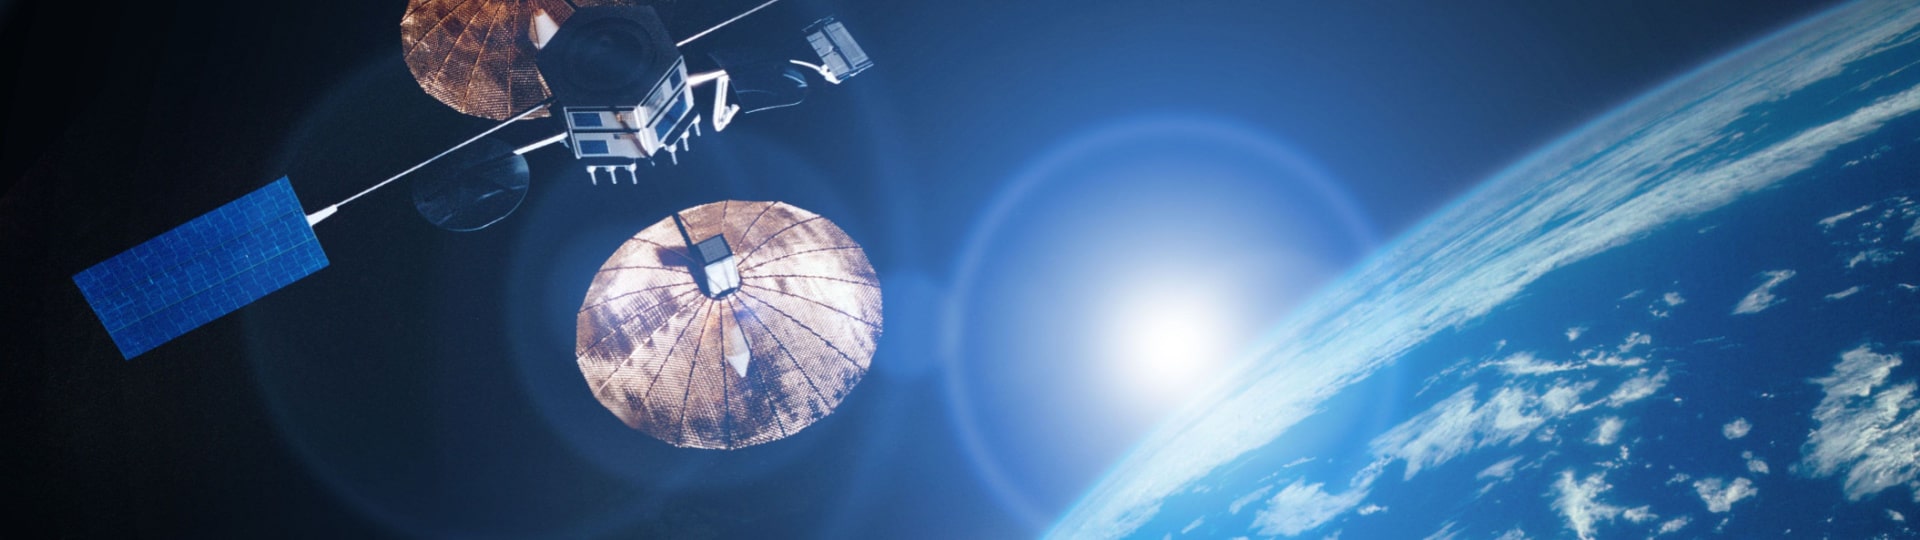 Firma Advent koupí v transakci za 6,4 miliardy USD provozovatele satelitů Maxar